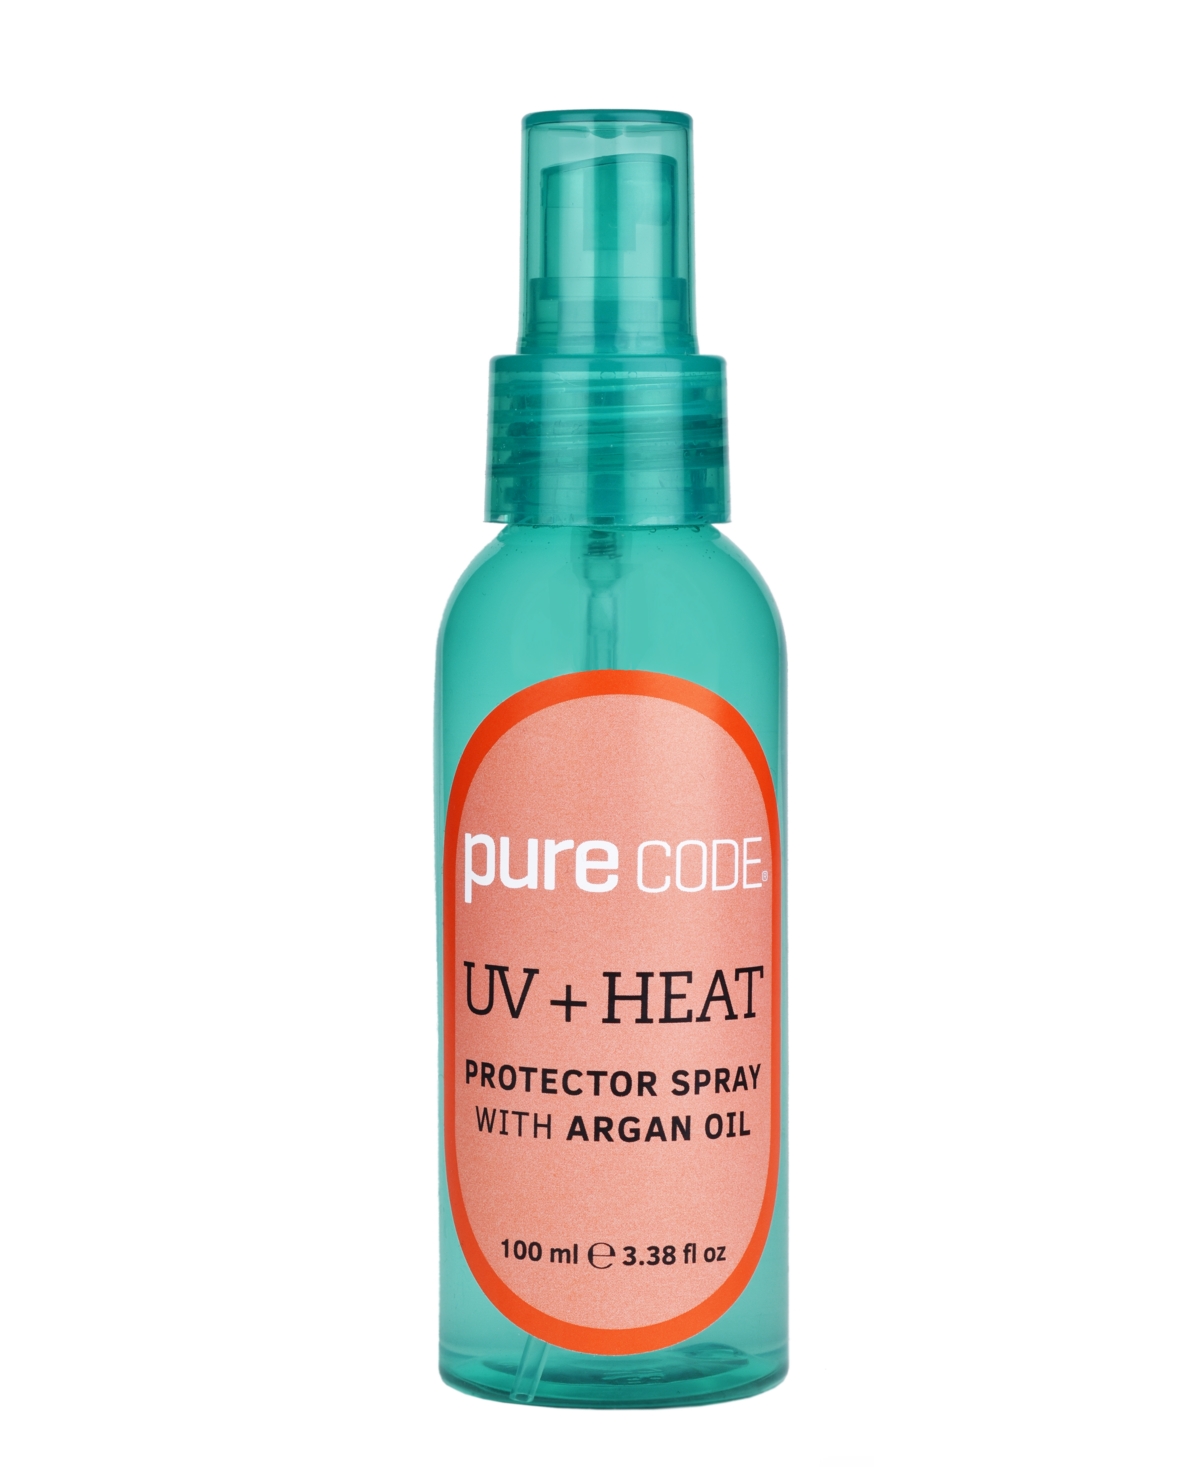 Uv + Heat Protector Spray With Argan Oil, 3.38 oz. - Clear